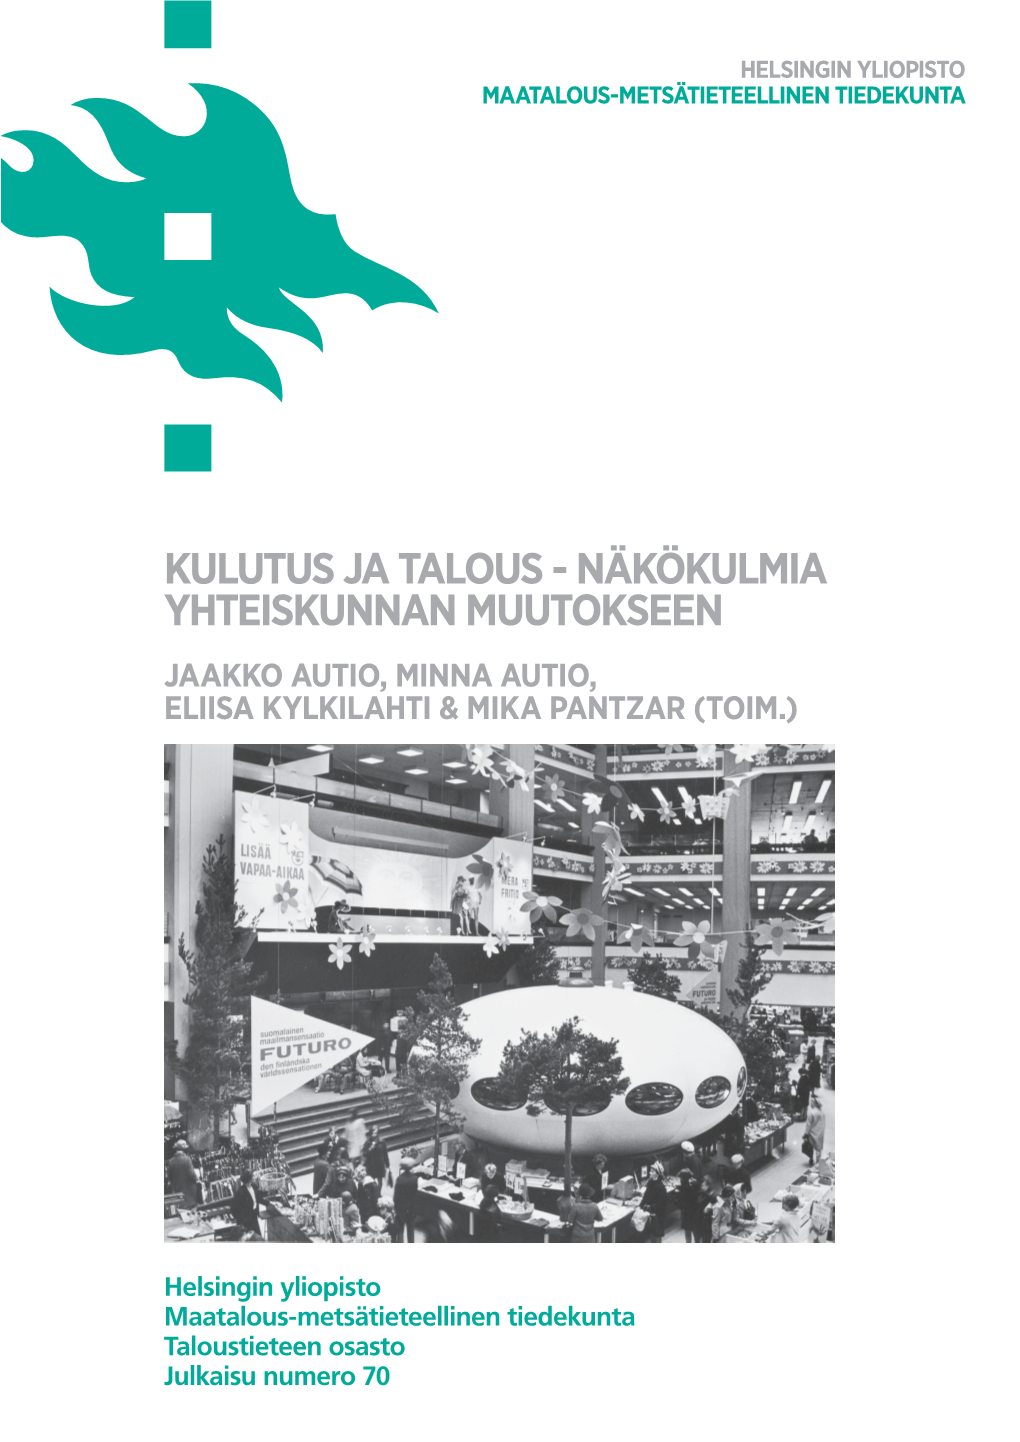 Kulutus Ja Talous - Näkökulmia Yhteiskunnan Muutokseen Jaakko Autio, Minna Autio, Eliisa Kylkilahti & Mika Pantzar (Toim.)